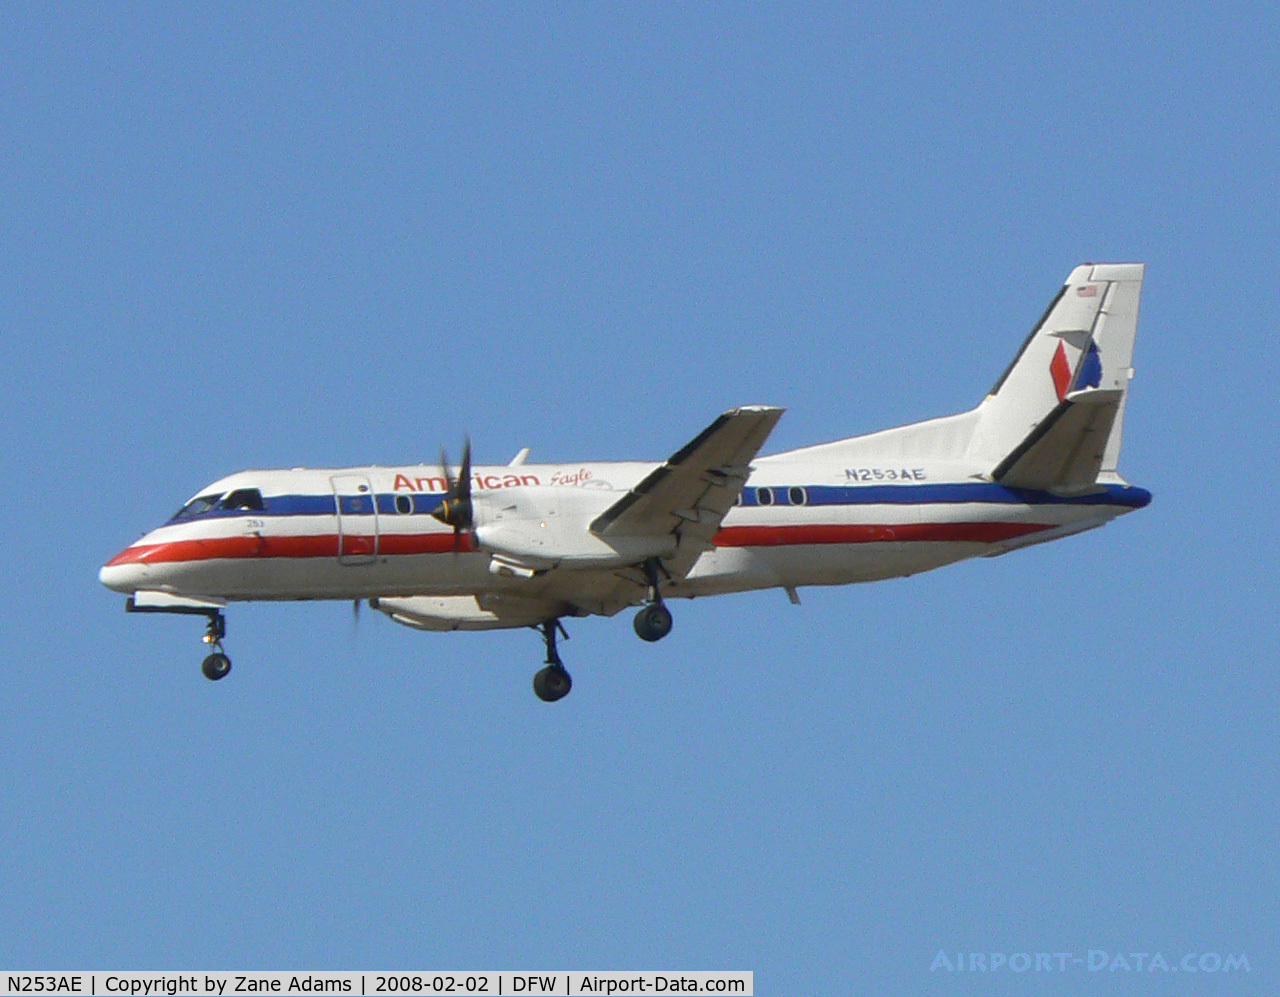 N253AE, 1991 Saab 340B C/N 340B-253, American Airlines at DFW